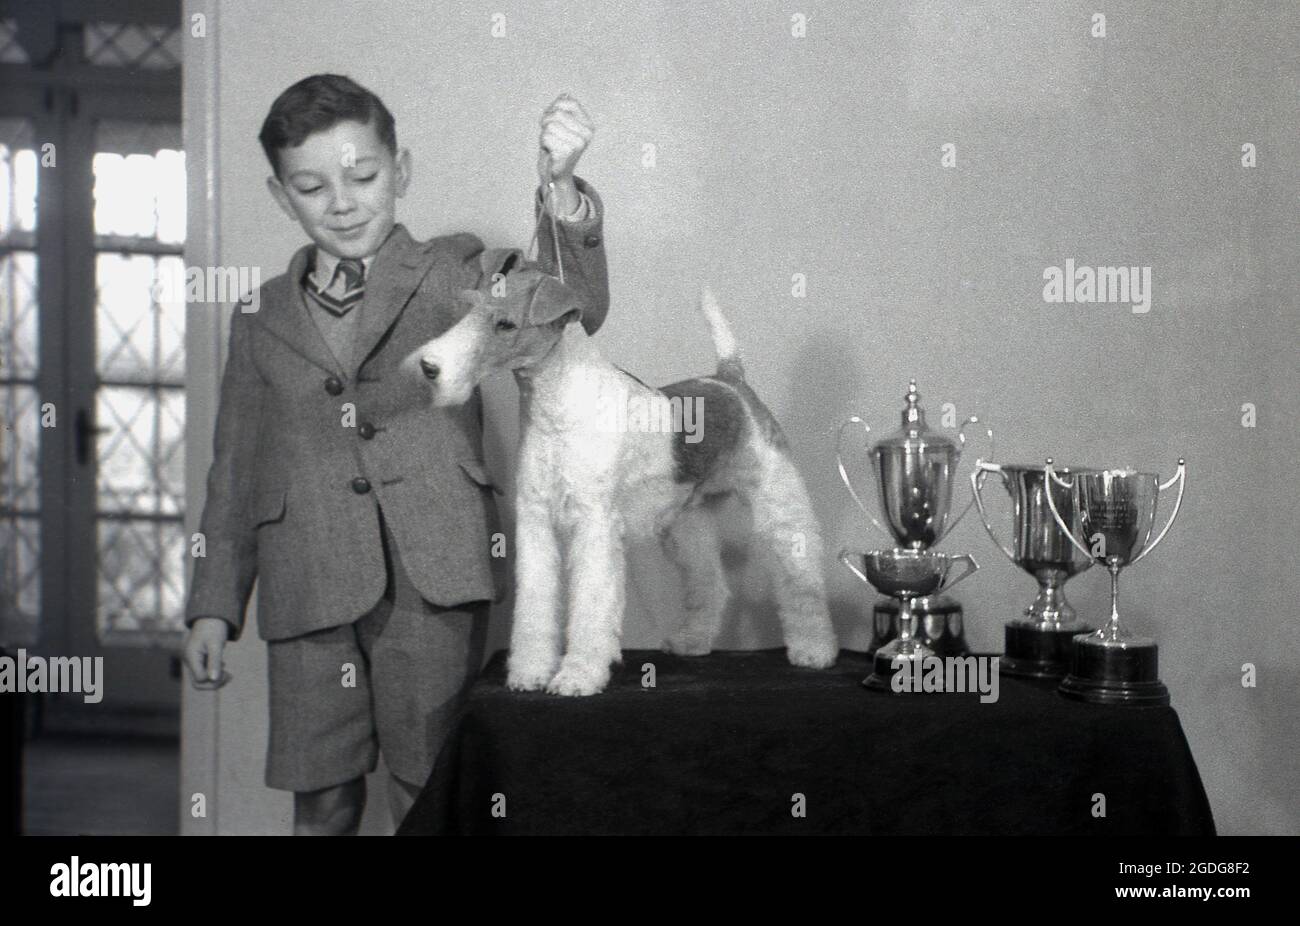 1955, historisch, zeigt ein junger Junge in seiner Schule stolz seinen preisgekrönten Hund, einen Drahtfuchsterrier, der auf einem kleinen Tisch neben den mehreren Trophäen steht, die er auf Hundeausstellungen in England gewonnen hat. Mit seinem markanten Aussehen, seinem drahtig Mantel und seinen ausdrucksstarken Eigenschaften war der Wire in der Vergangenheit ein erfolgreicher Showhund und eine beliebte Präsenz in Filmen und Fernsehen. In England werden Wire und Smooth Fox Terrier seit den 1870er Jahren als getrennte Rassen anerkannt, im Gegensatz zu den USA, als sie erst 1985 als eigenständige Rassen anerkannt wurden. Stockfoto